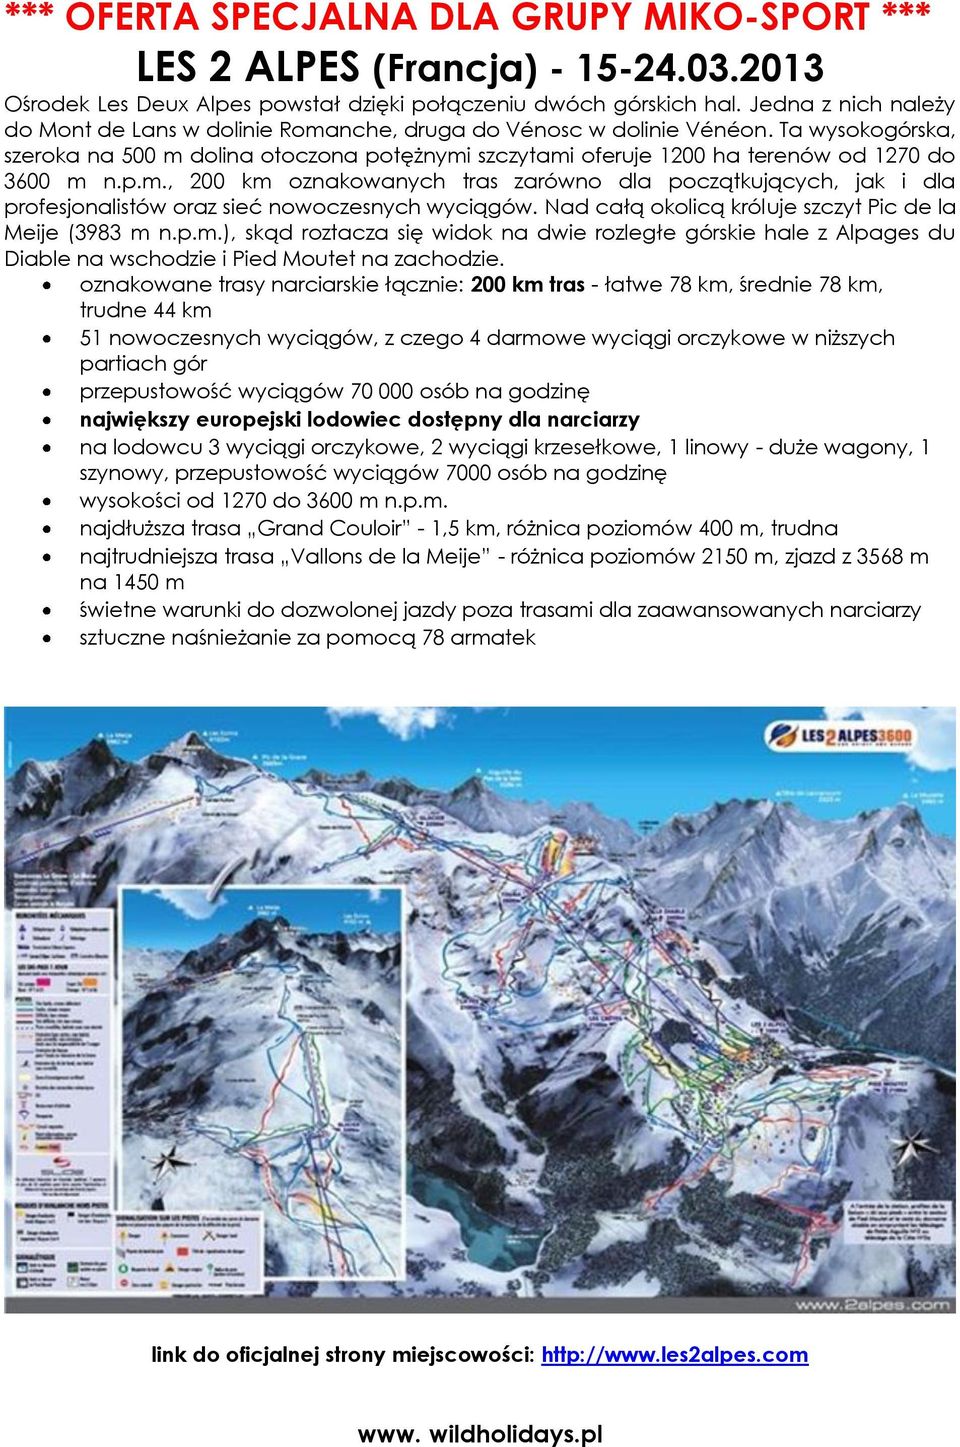 Ta wysokogórska, szeroka na 500 m dolina otoczona potężnymi szczytami oferuje 1200 ha terenów od 1270 do 3600 m n.p.m., 200 km oznakowanych tras zarówno dla początkujących, jak i dla profesjonalistów oraz sieć nowoczesnych wyciągów.